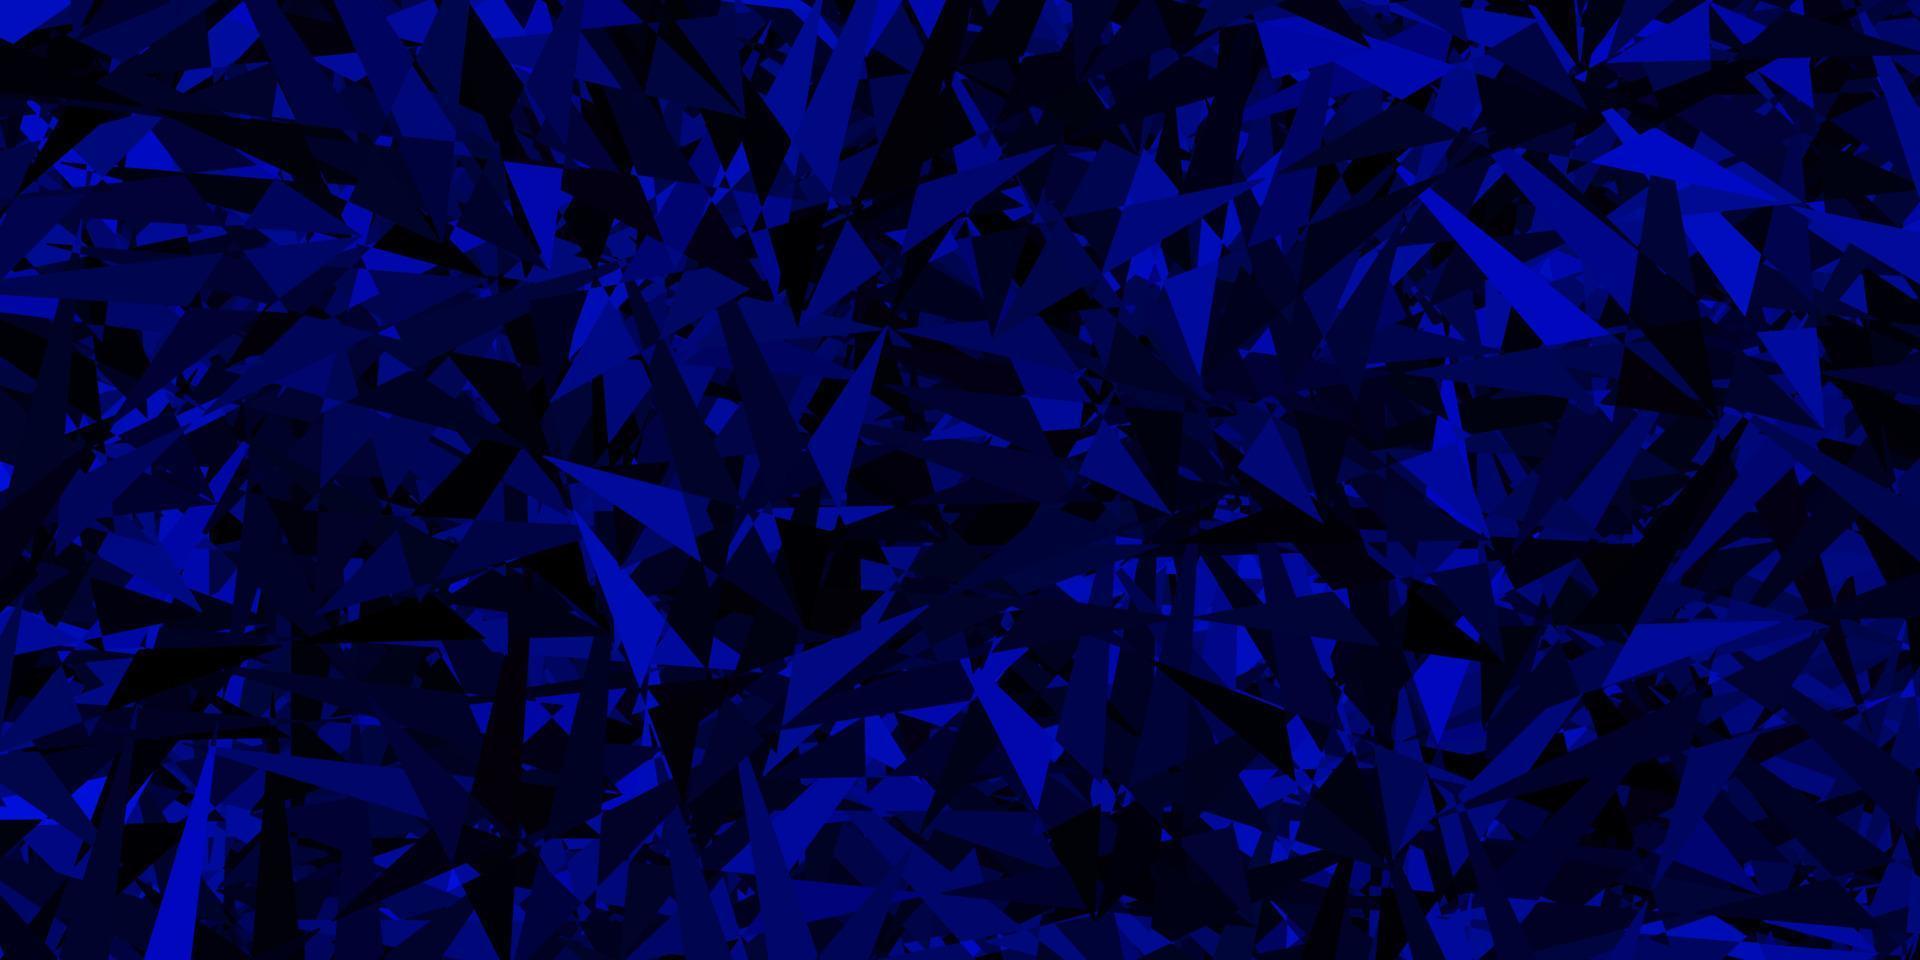 sfondo vettoriale blu scuro con stile poligonale.